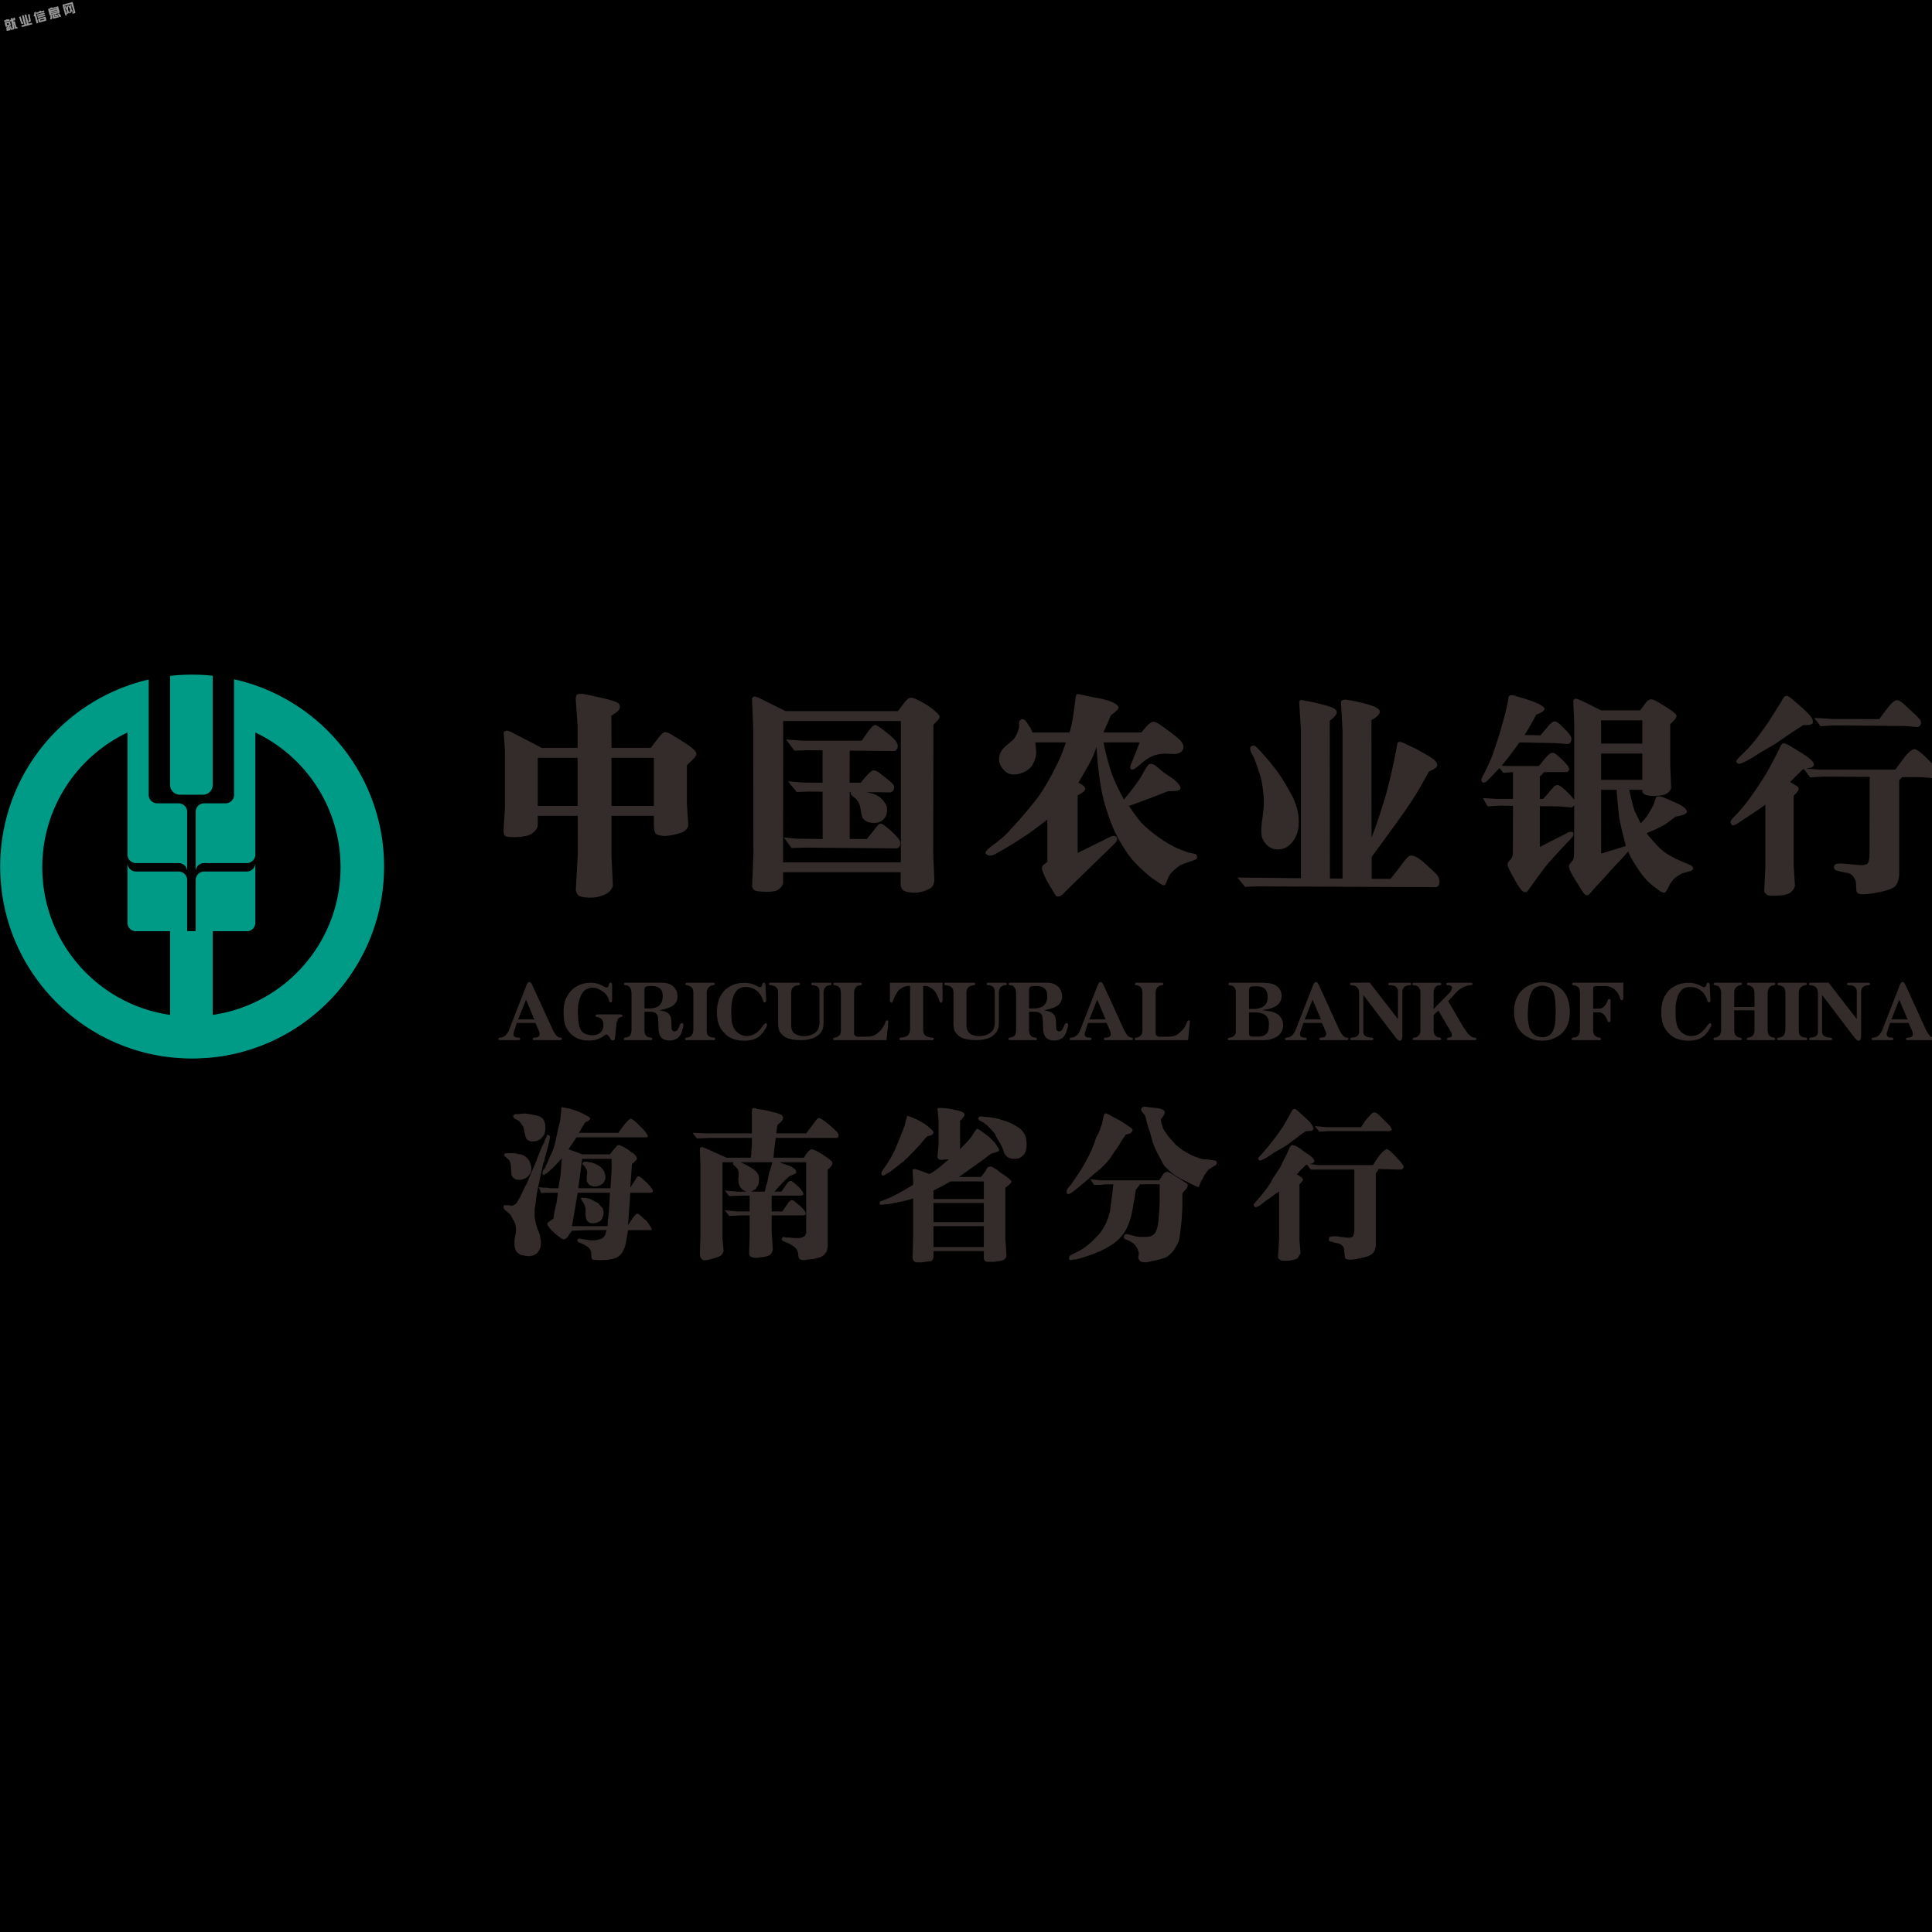 中国农业银行logopng图片